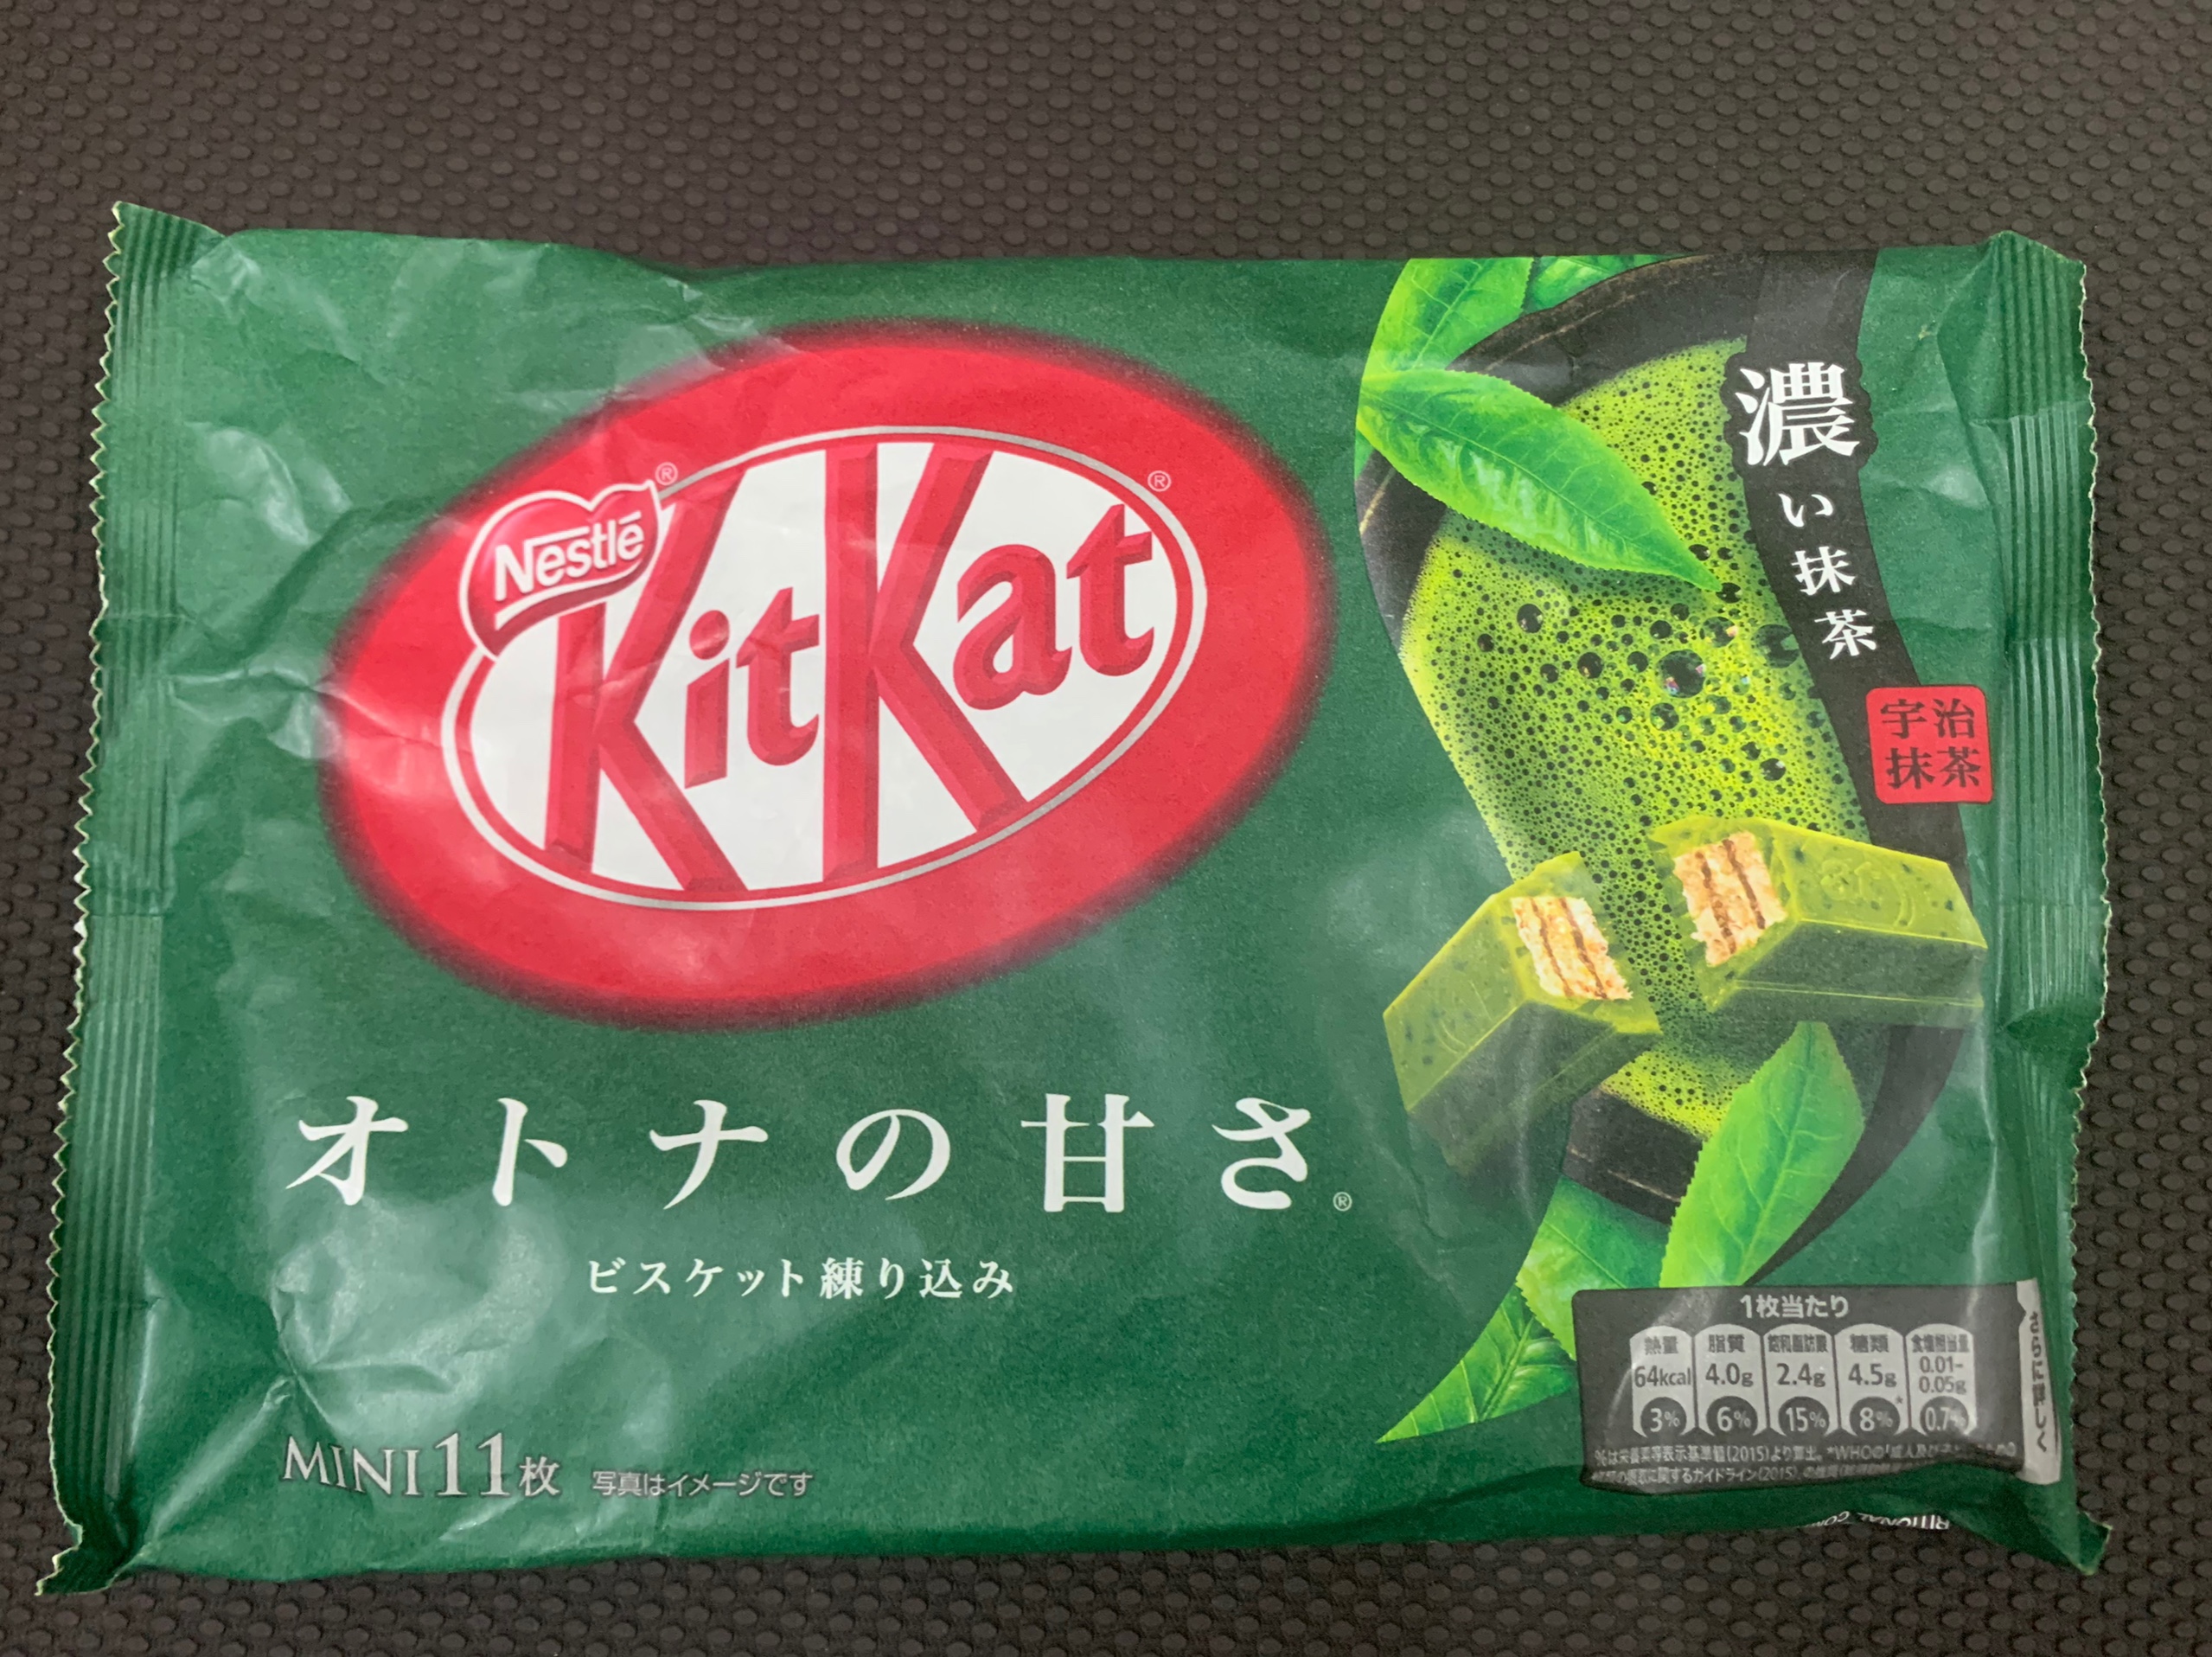 Bánh Kitkat Nhật Bản thơm ngon giòn rụm đủ vị trà xanh, lúa mạch, socola